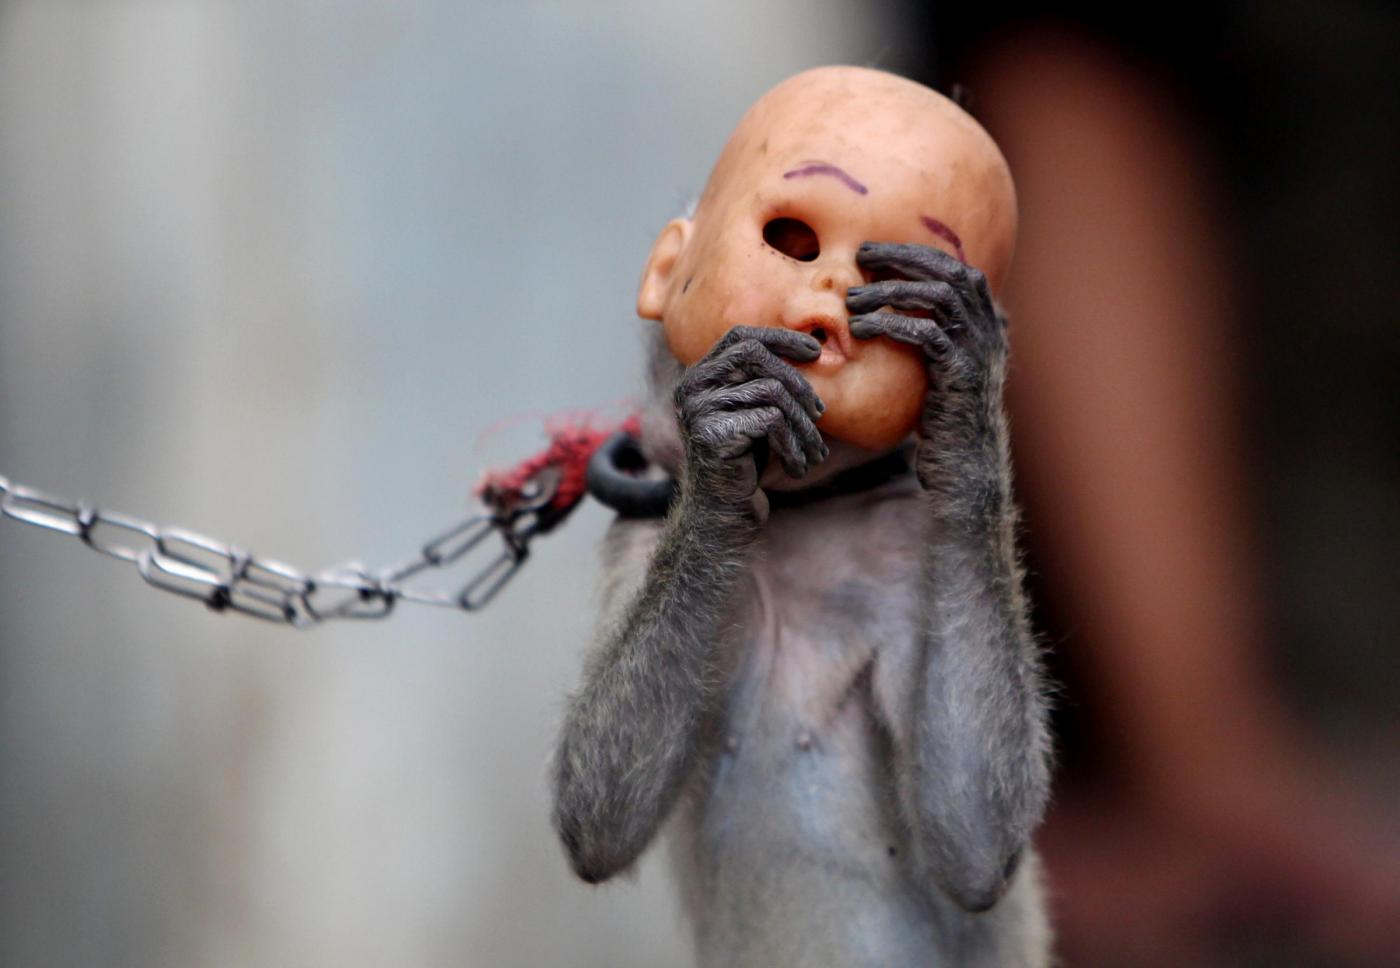 Jakarta dice no alla schiavitù delle scimmie